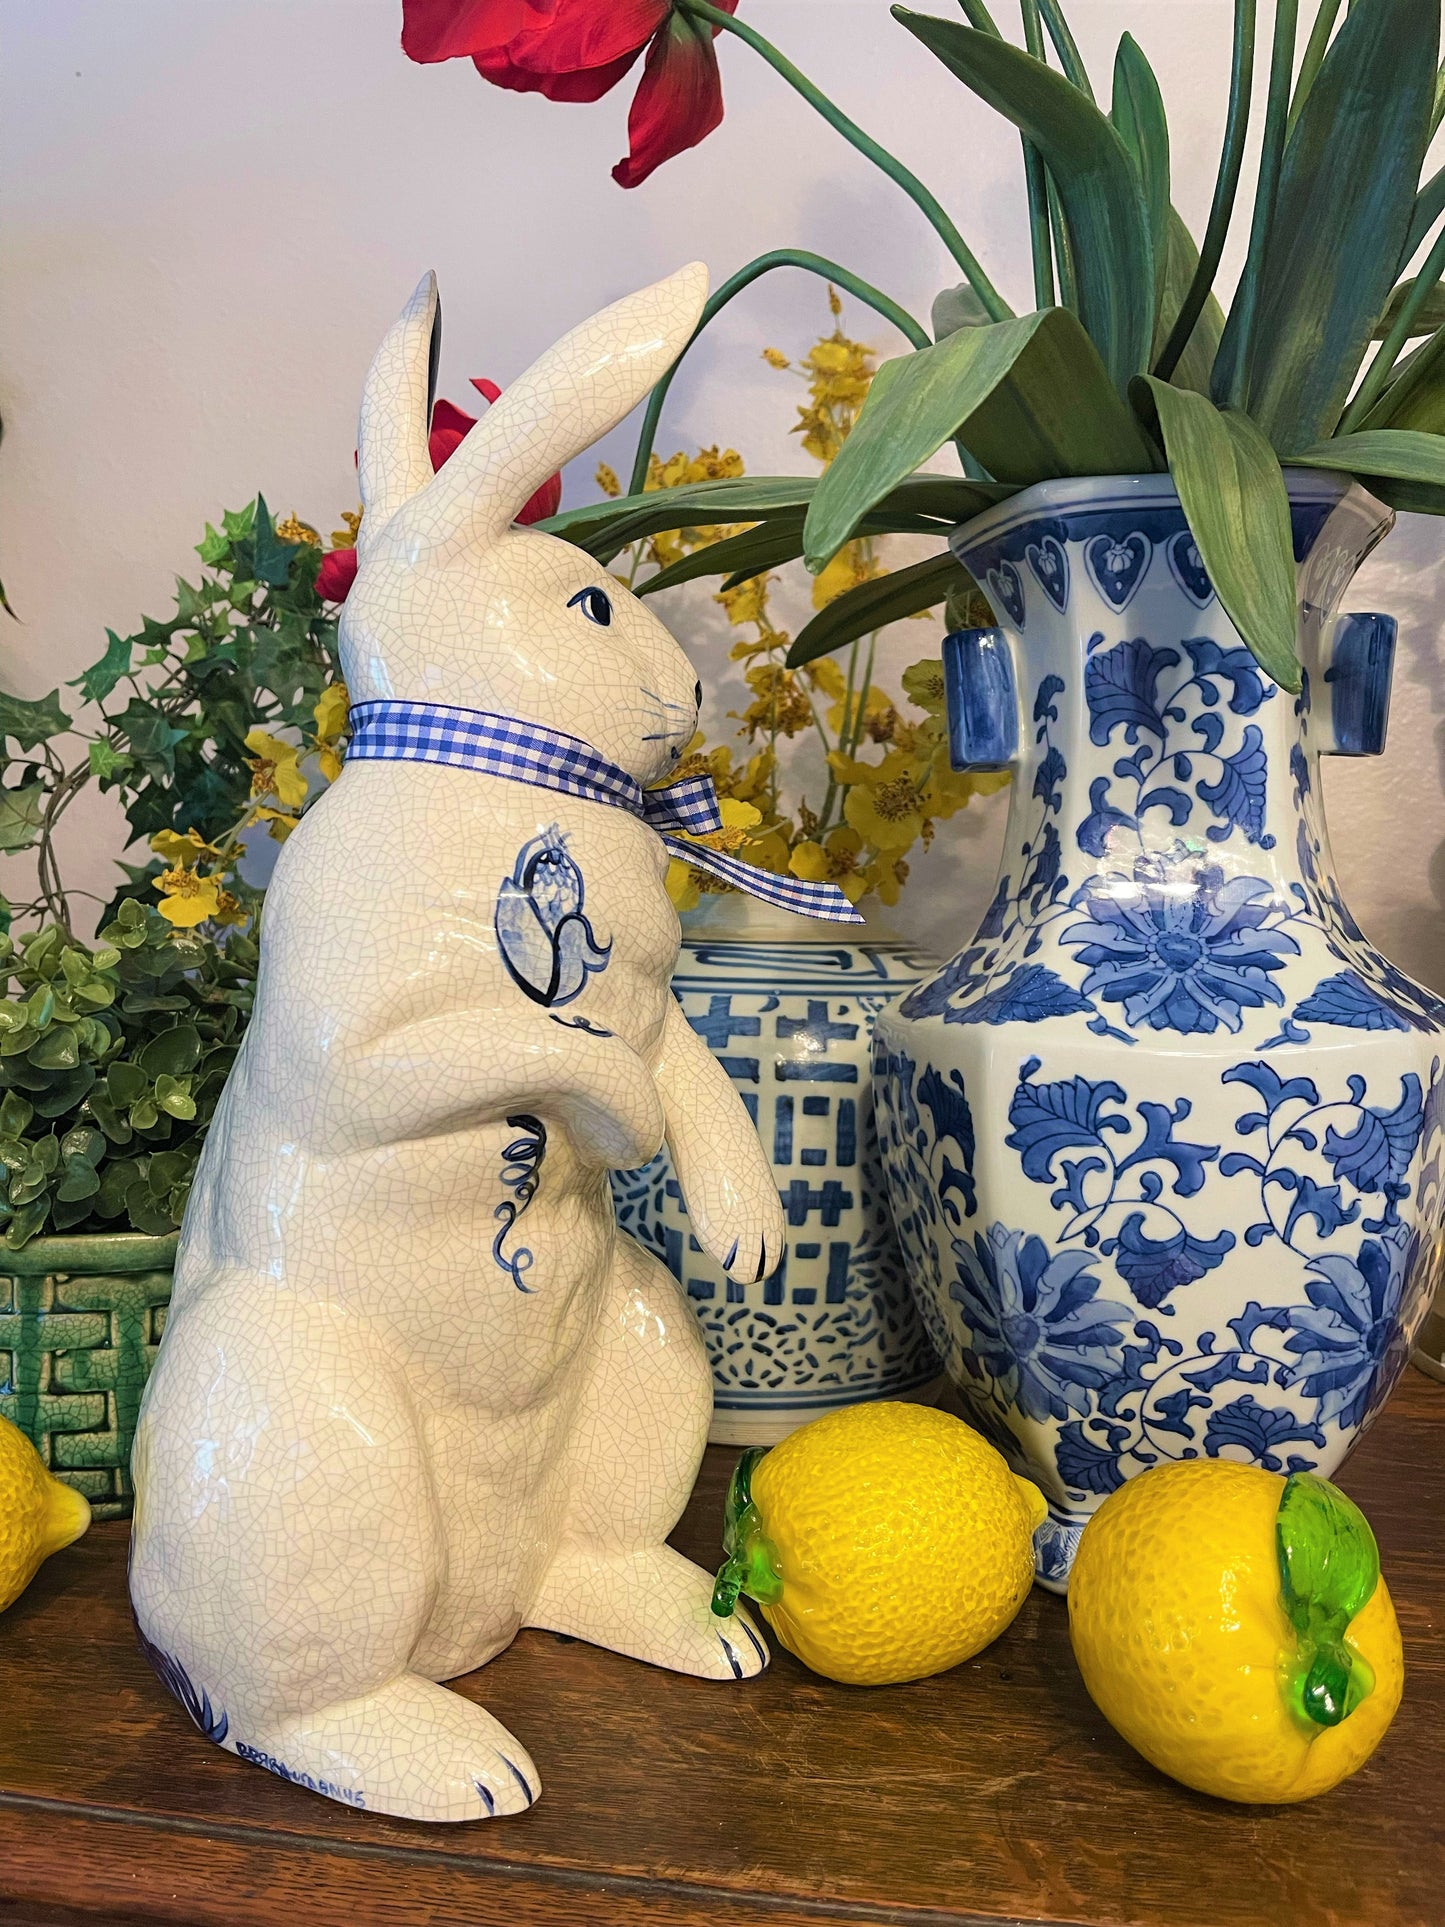 Vintage Potting Shed Dedham Pottery Large Blue and White Rabbit, Marked, Crackely Glazed Finish